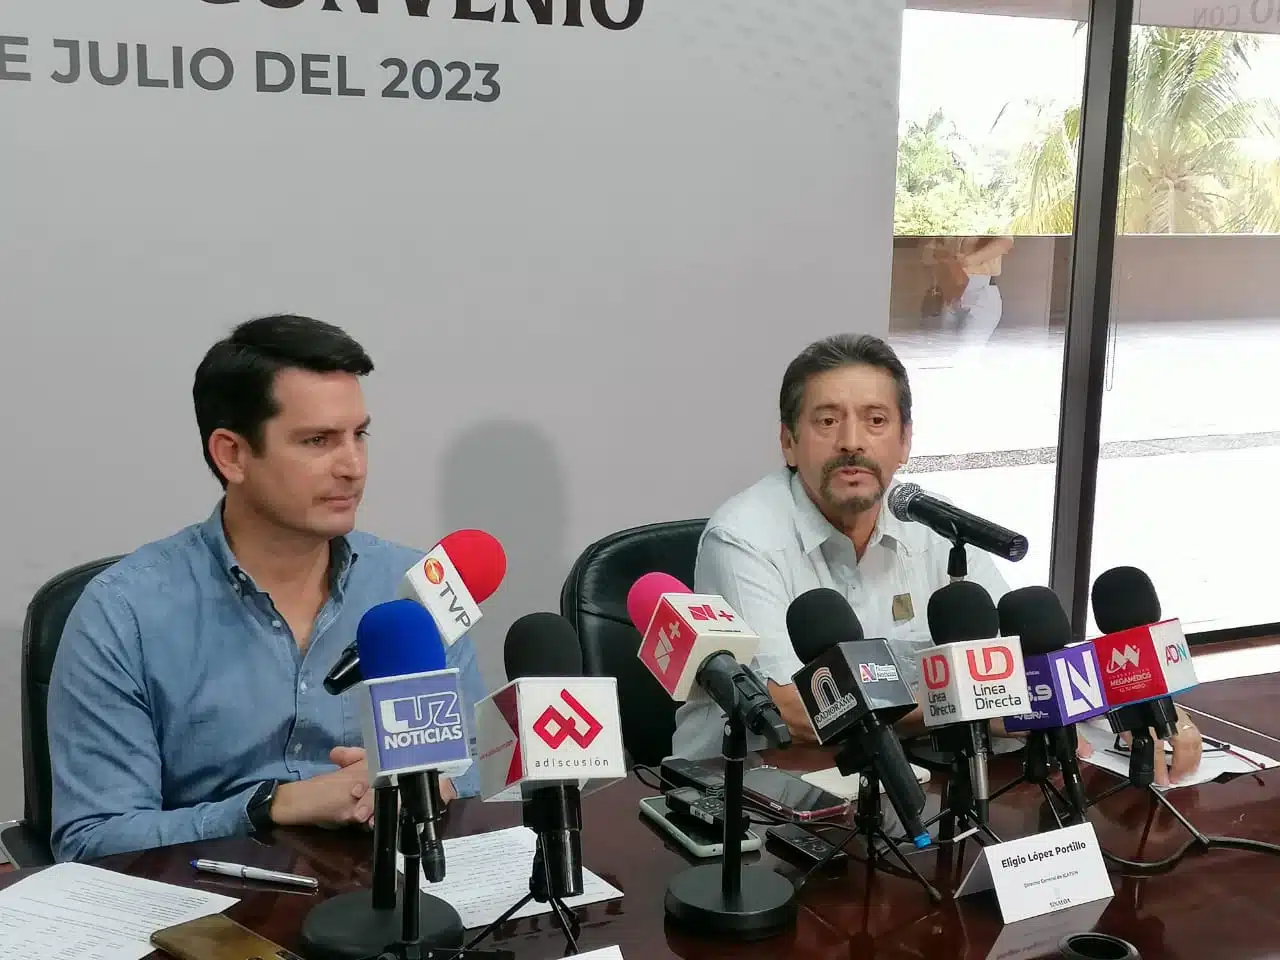 Secretaría de Economía y el Instituto de Capacitación del Trabajo del Estado de Sinaloa, firman convenio de colaboración